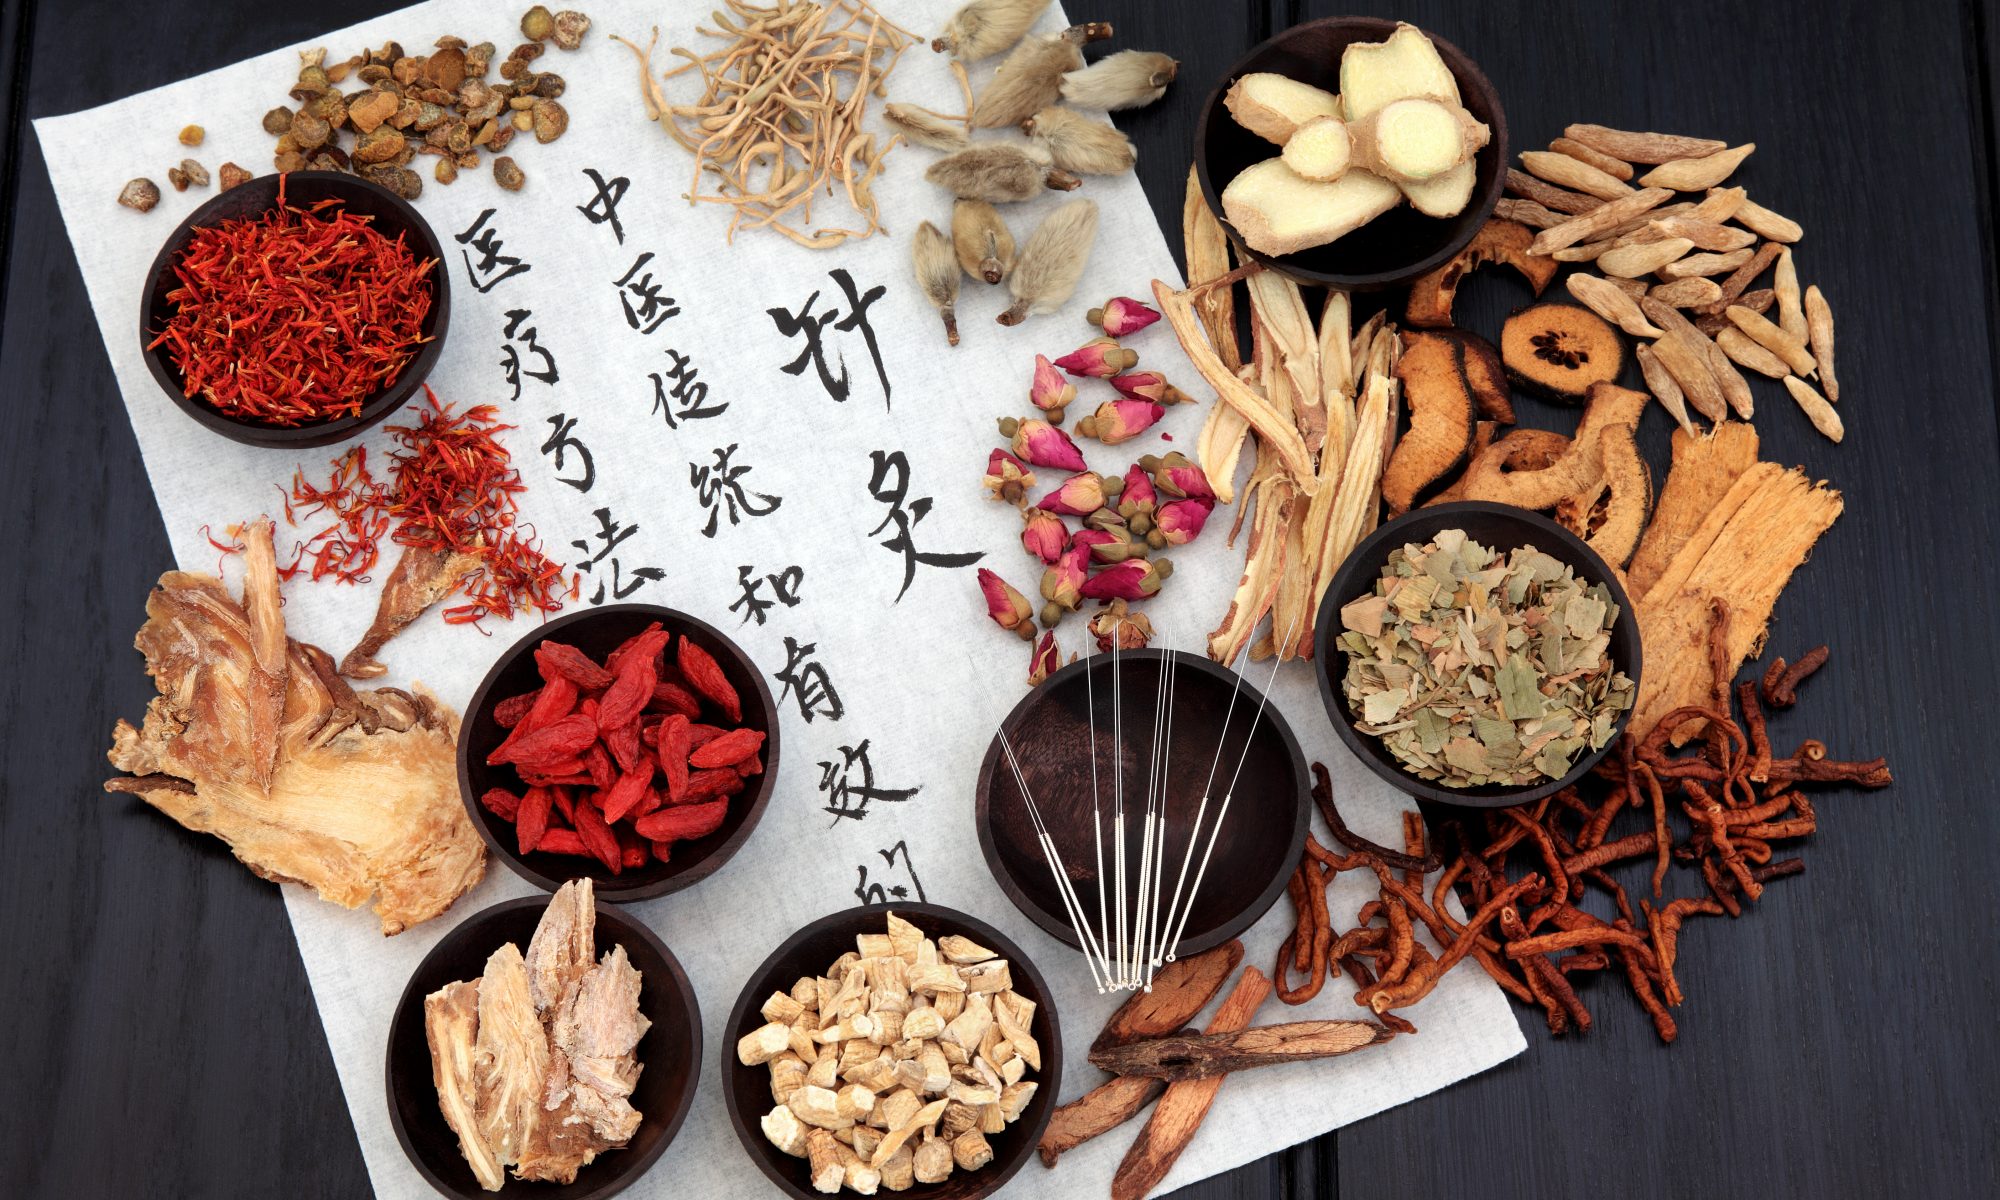 การใช้สมุนไพรจีน thai-herbs.thdata.co | การใช้สมุนไพรจีน สรรพคุณ สมุนไพร ไทย 